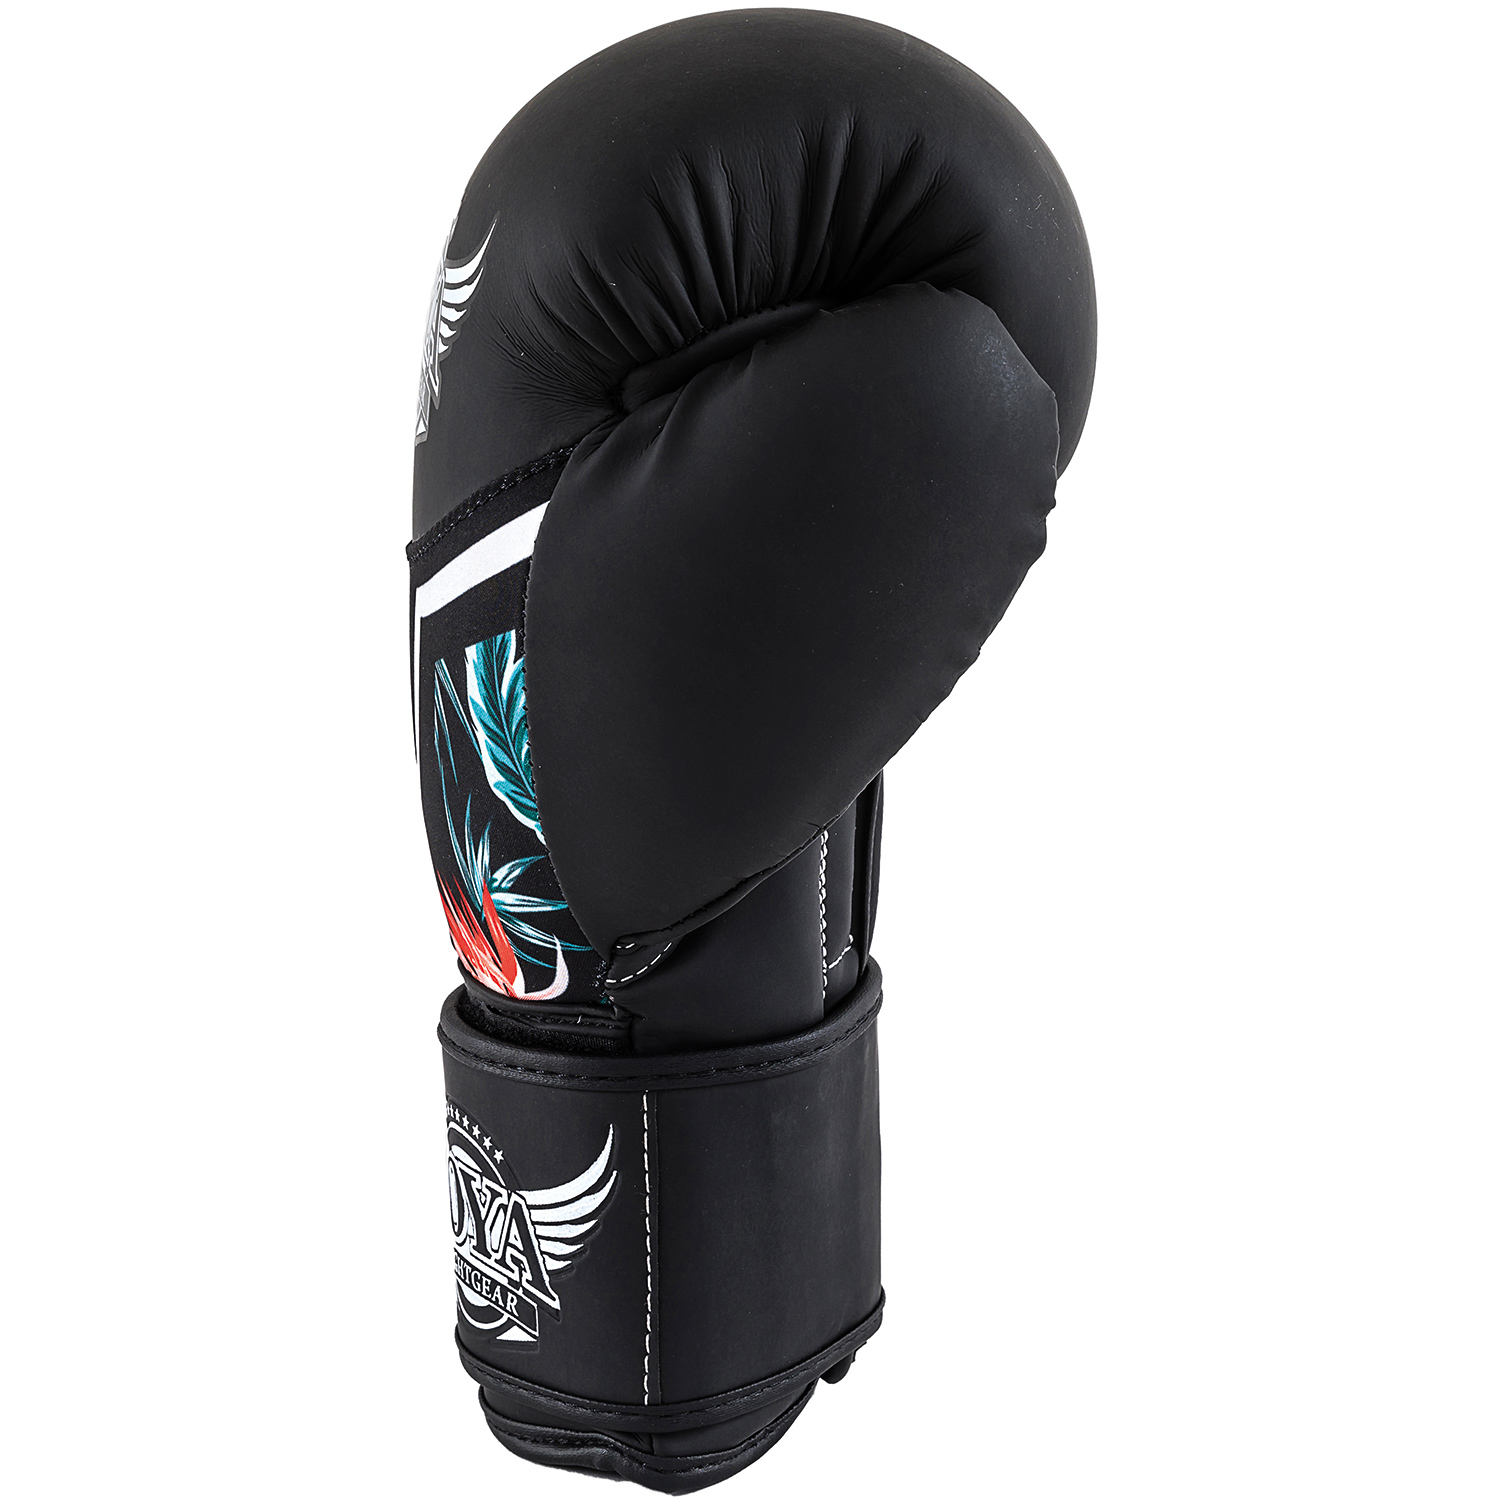 Joya Tropical boxing glove 12 oz